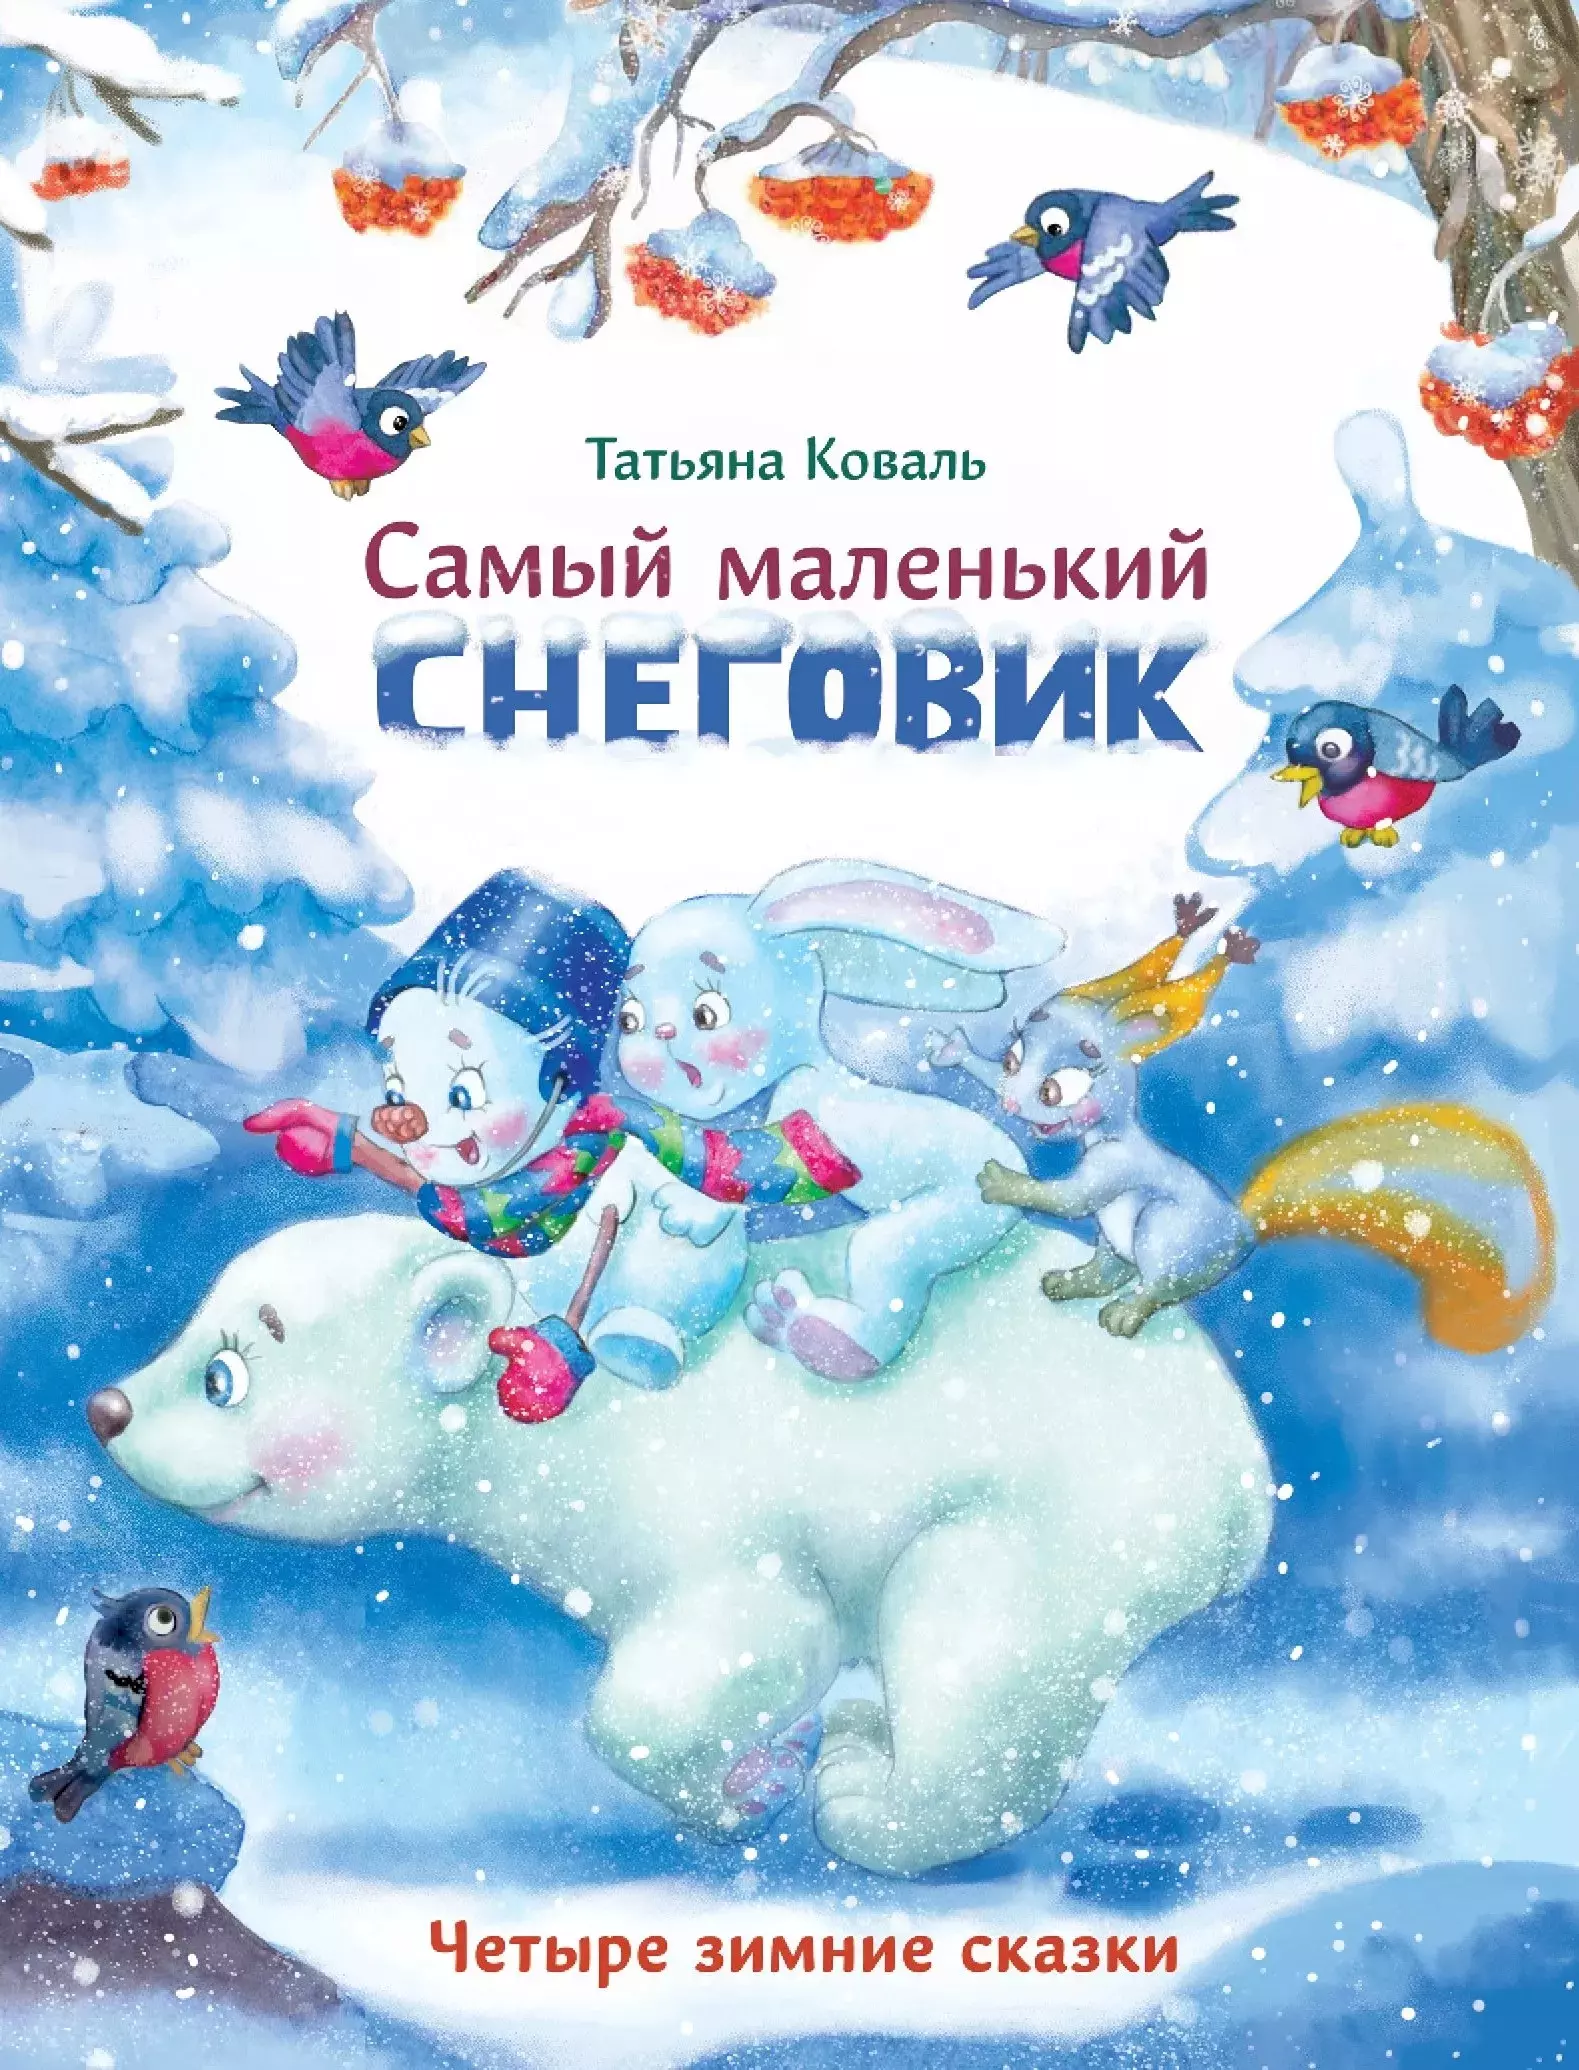 Коваль Татьяна Леонидовна - Самый маленький снеговик. Четыре зимние сказки